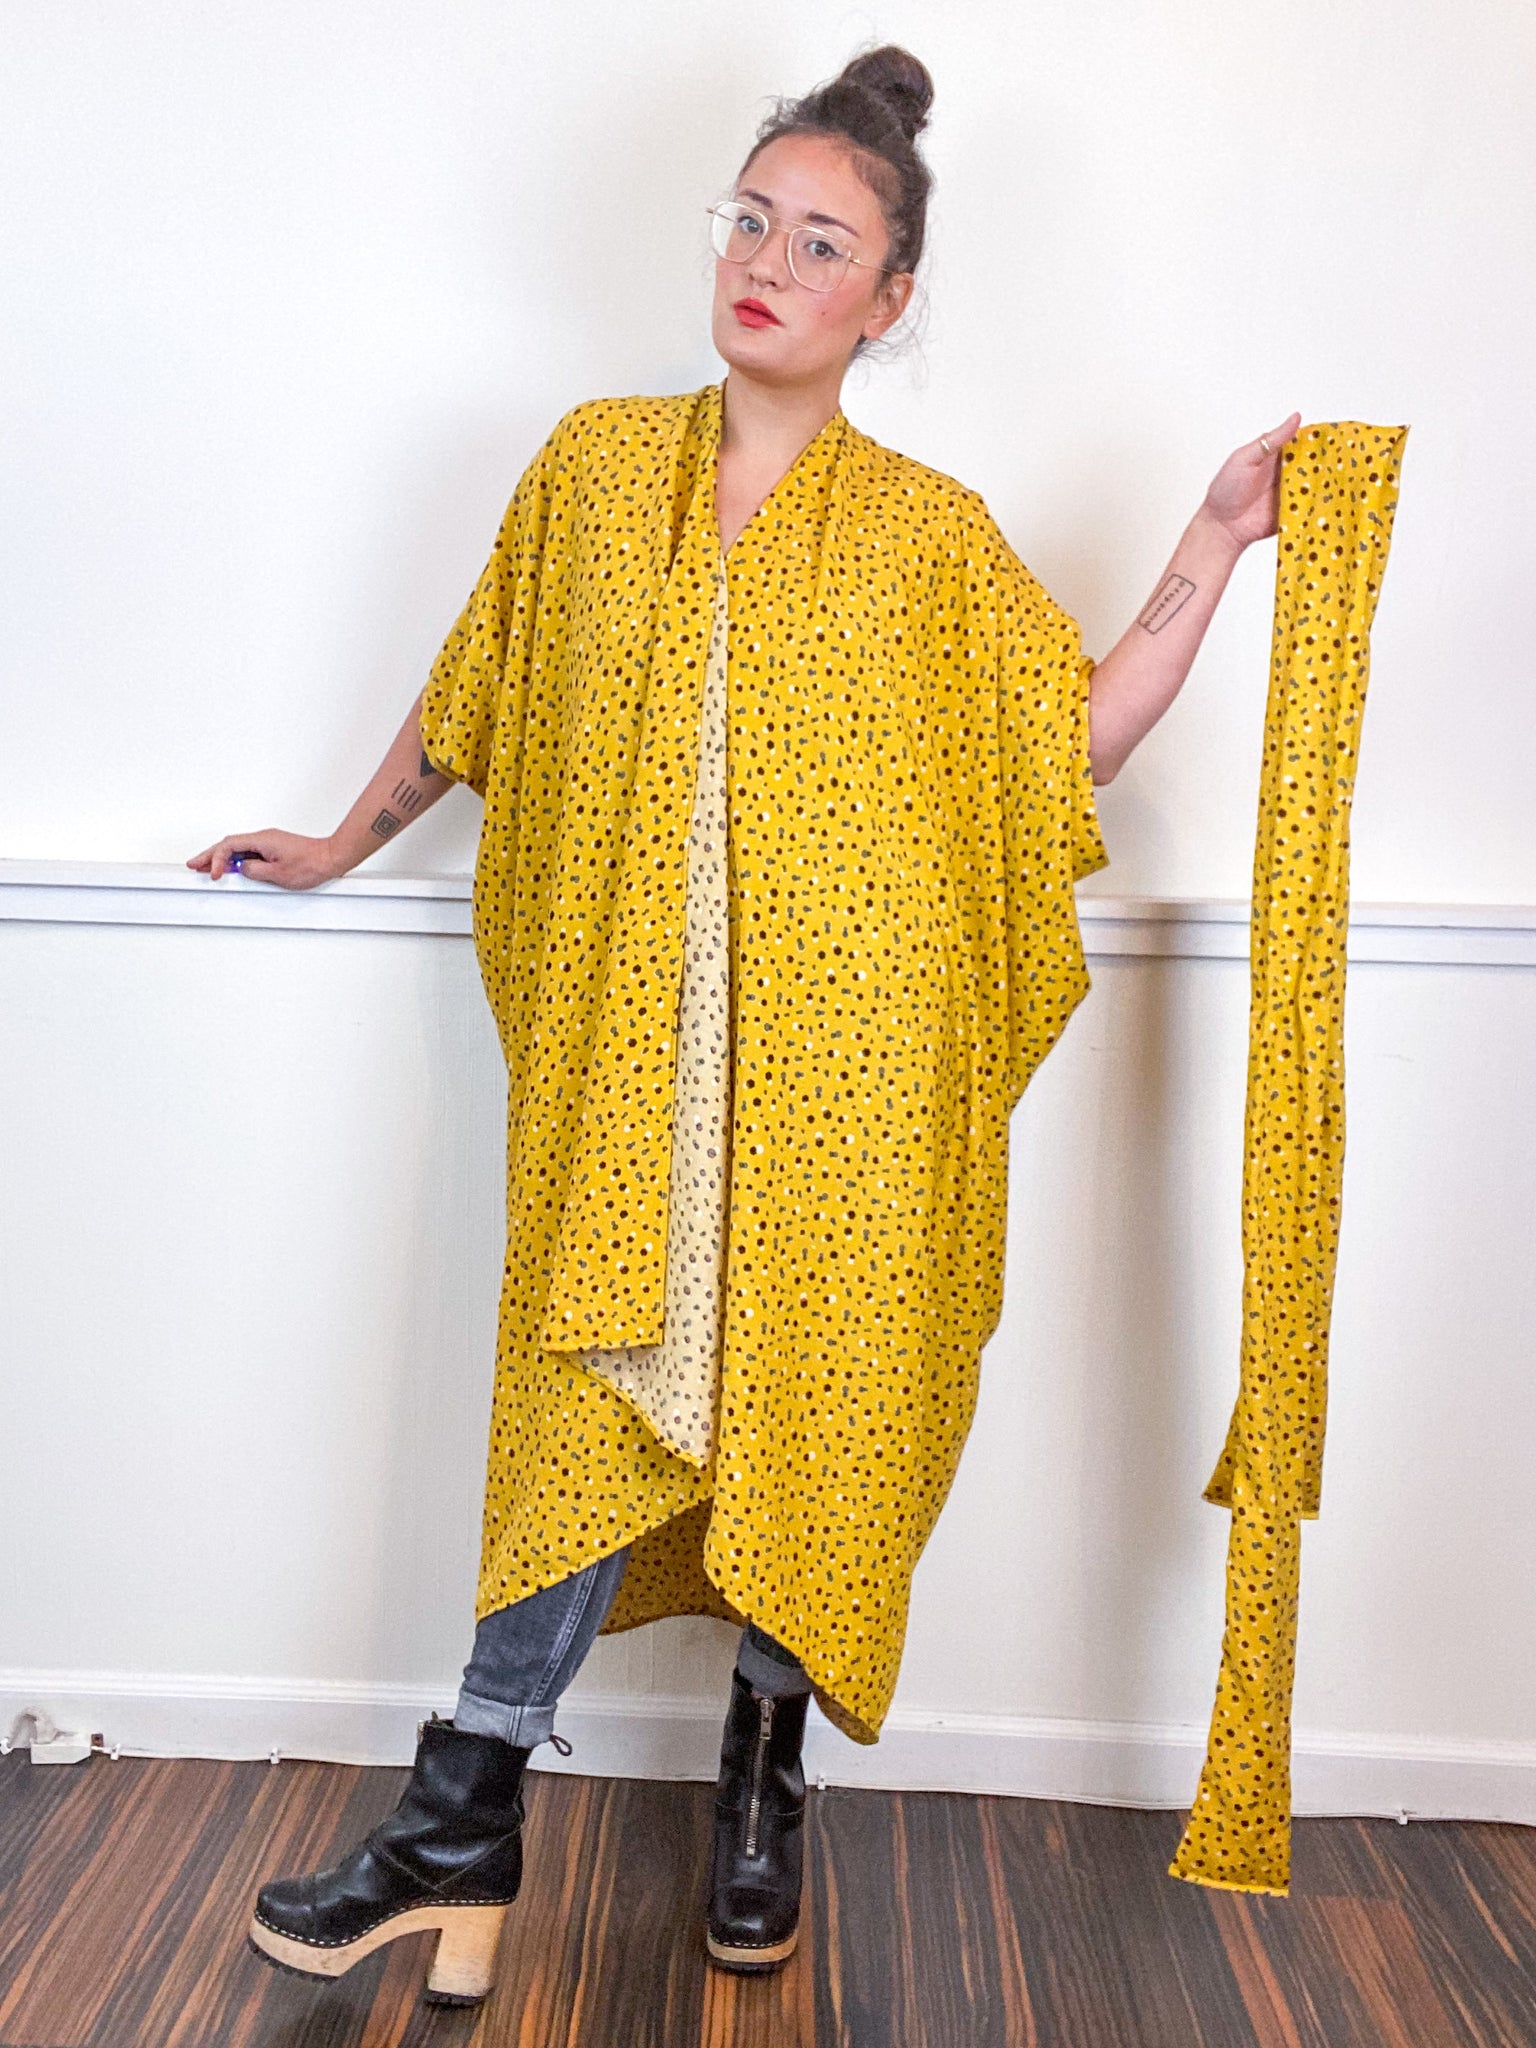 Print High Low Kimono Mustard Hexagon Rayon Challis